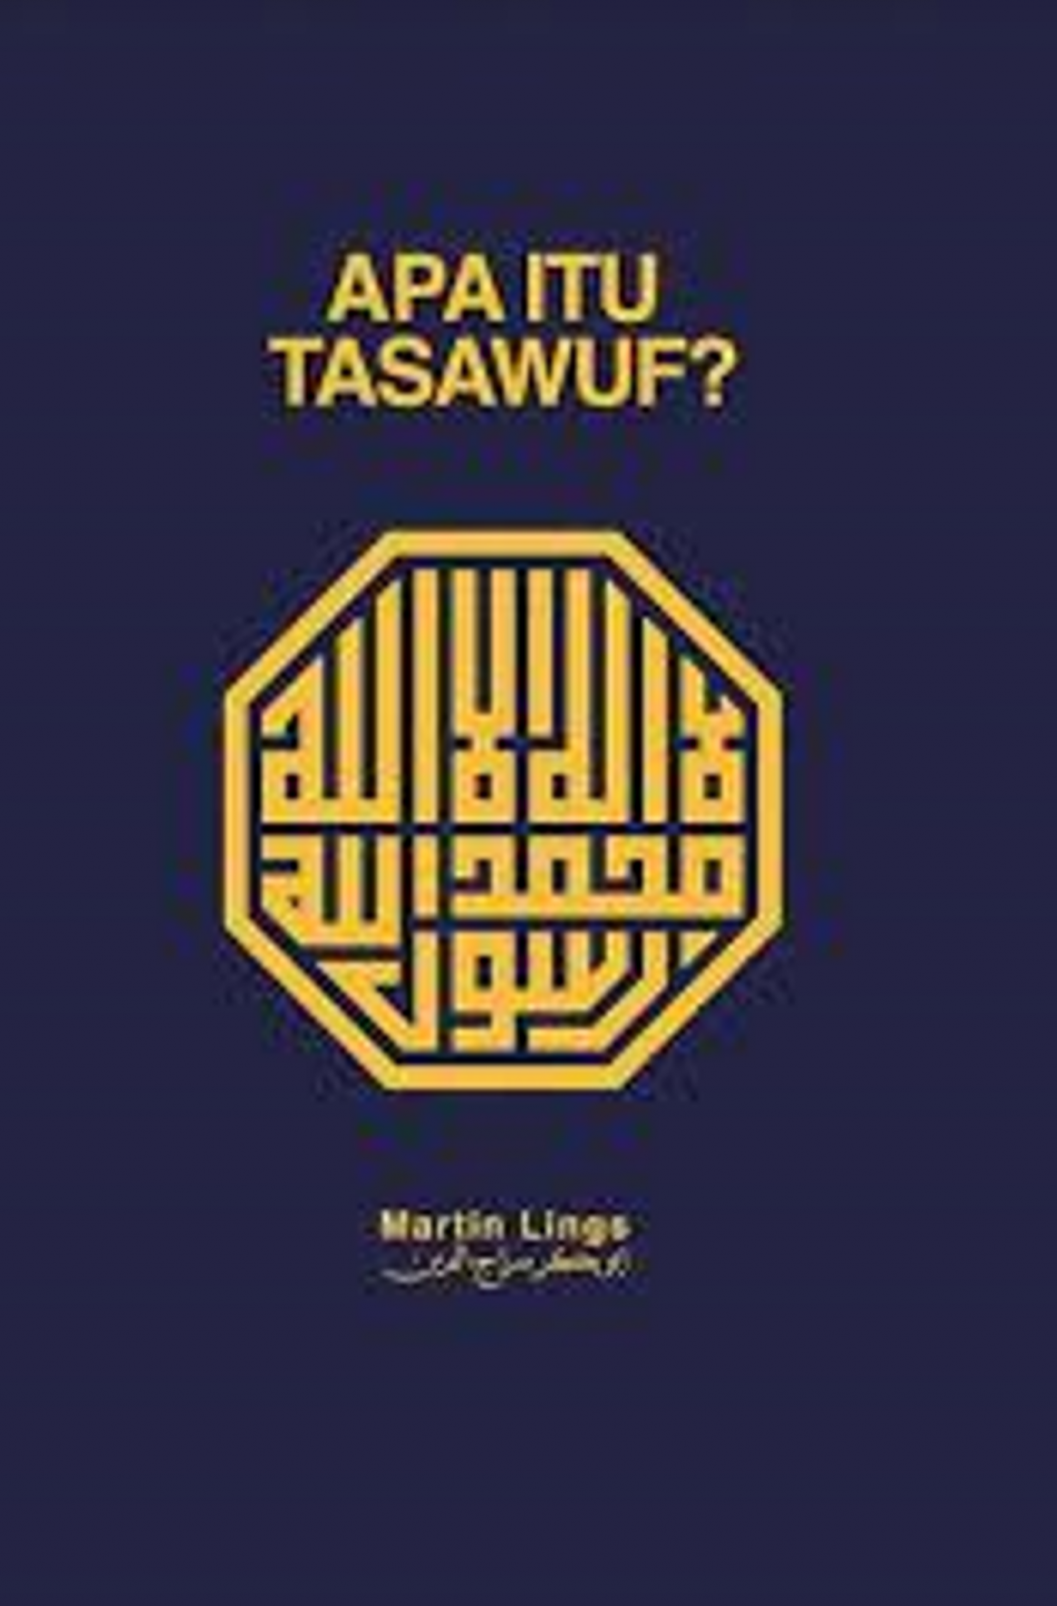 Apa Itu Tasawwuf? (Martin Lings)